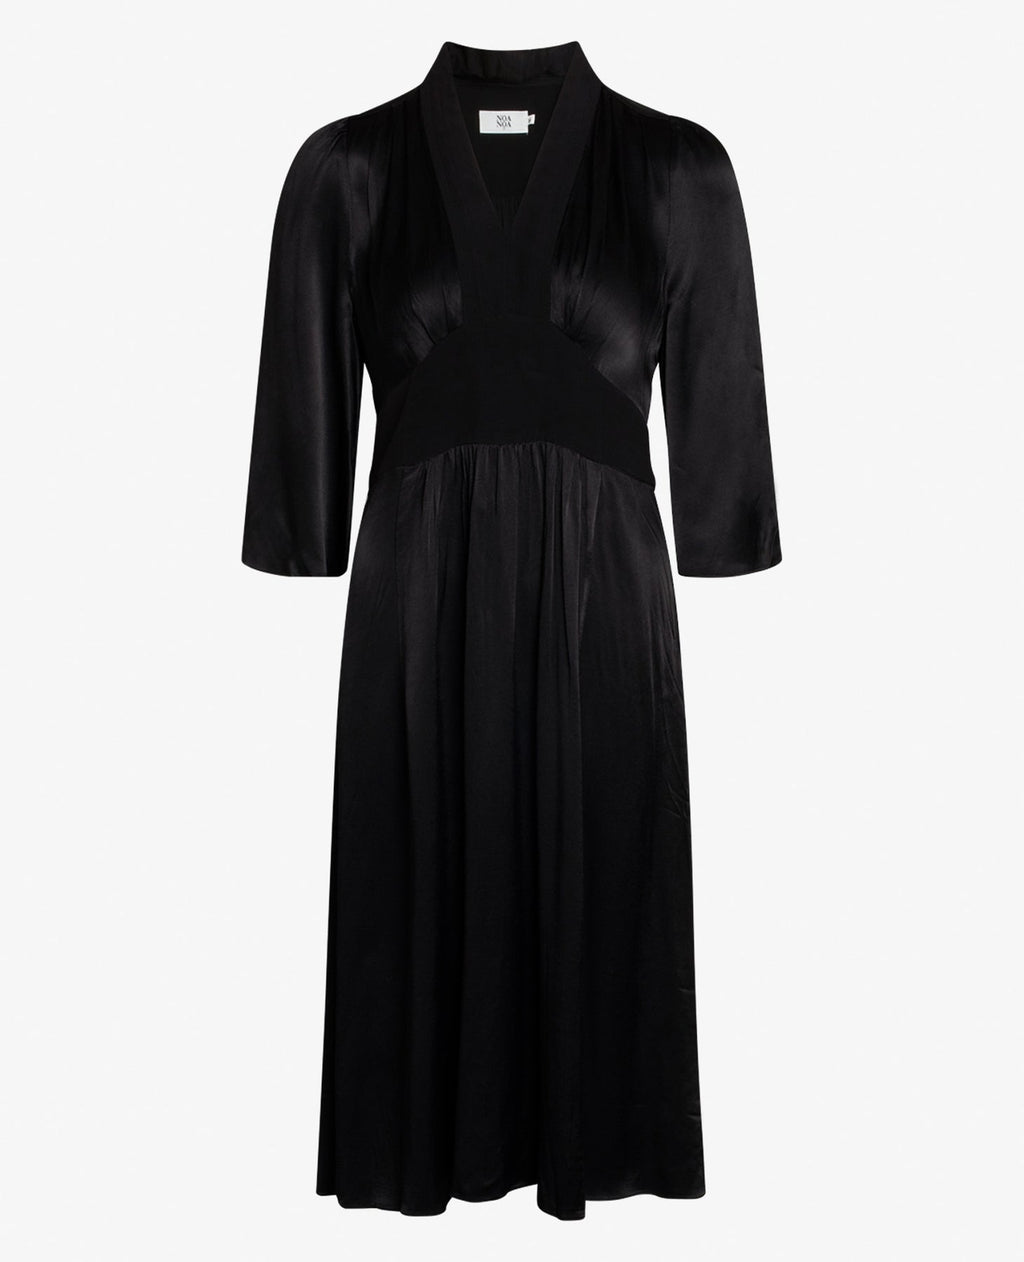 Dressy Crepe Dress in black